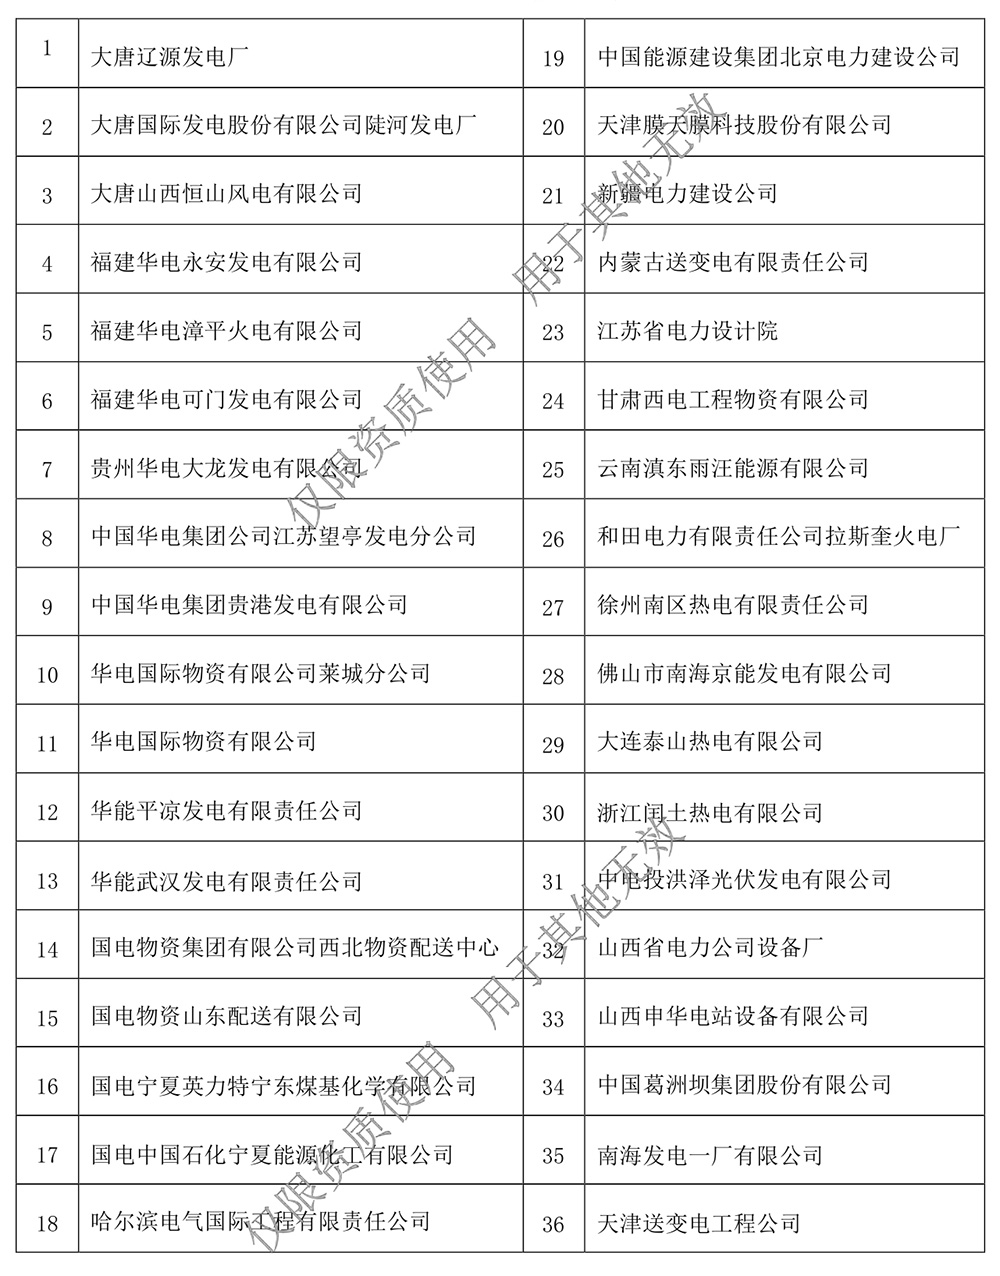 安徽天彩电缆集团资质文件水印压缩版0172.jpg